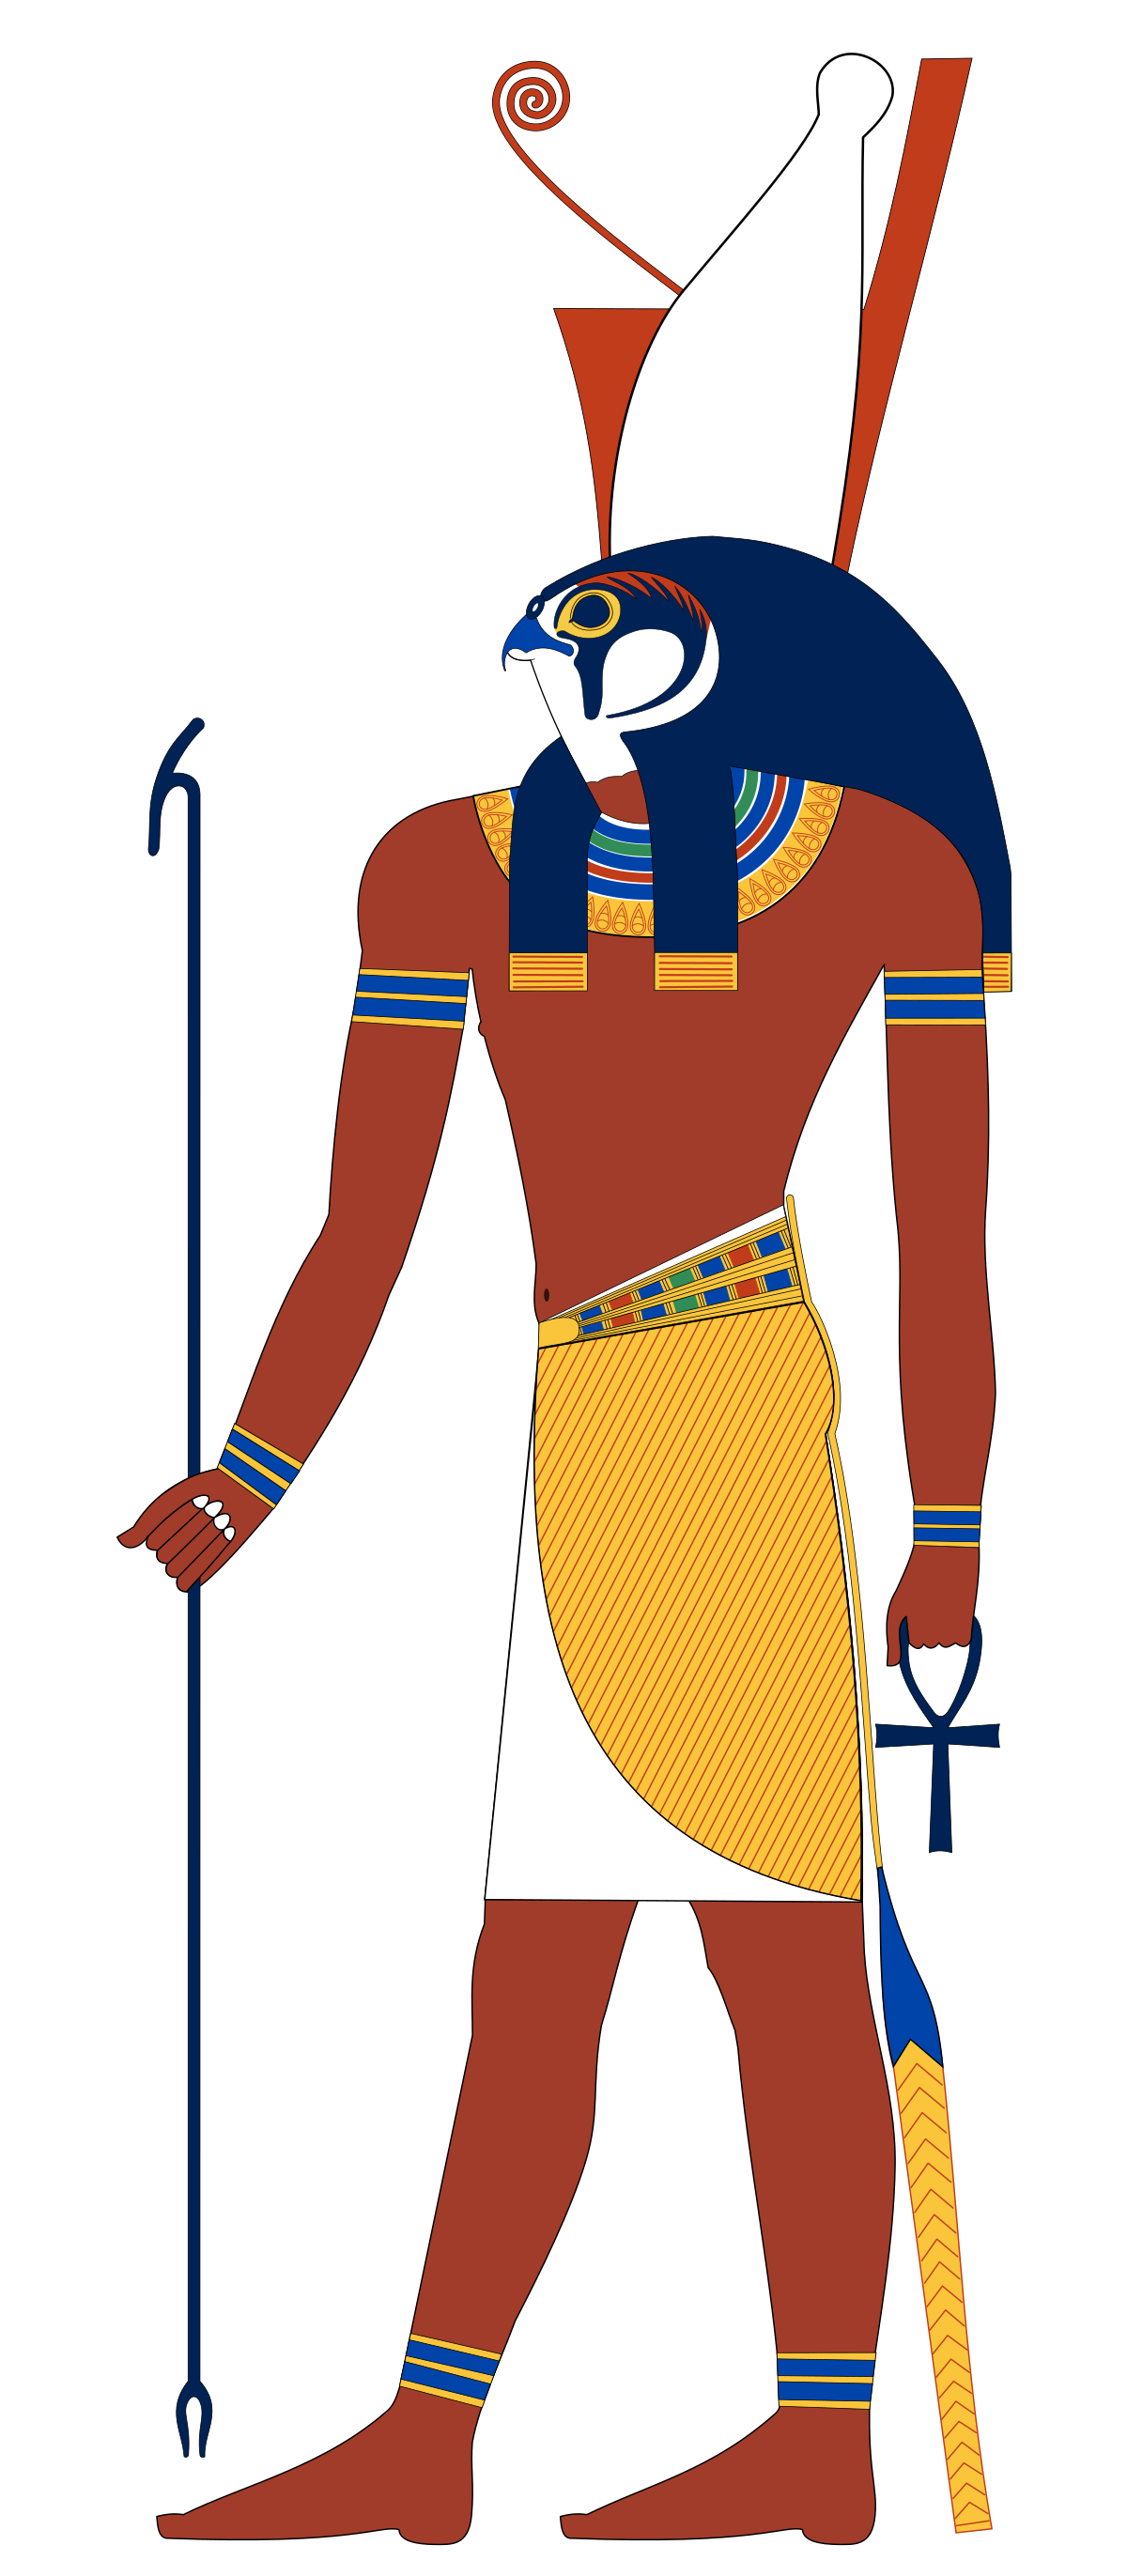 Ai Cập cổ đại: Khám phá vẻ đẹp đến ngỡ ngàng của Ai Cập cổ đại, nơi mà những tấm vải lụa thêu, các bức tượng đá và những mẫu vật khảm trổ được trưng bày đầy ấn tượng. Hình ảnh này sẽ đưa bạn trở về thời đại đầy thu hút và kết thúc trong sự kính phục cho sự kiện lịch sử ấn tượng nhất của Ai Cập.